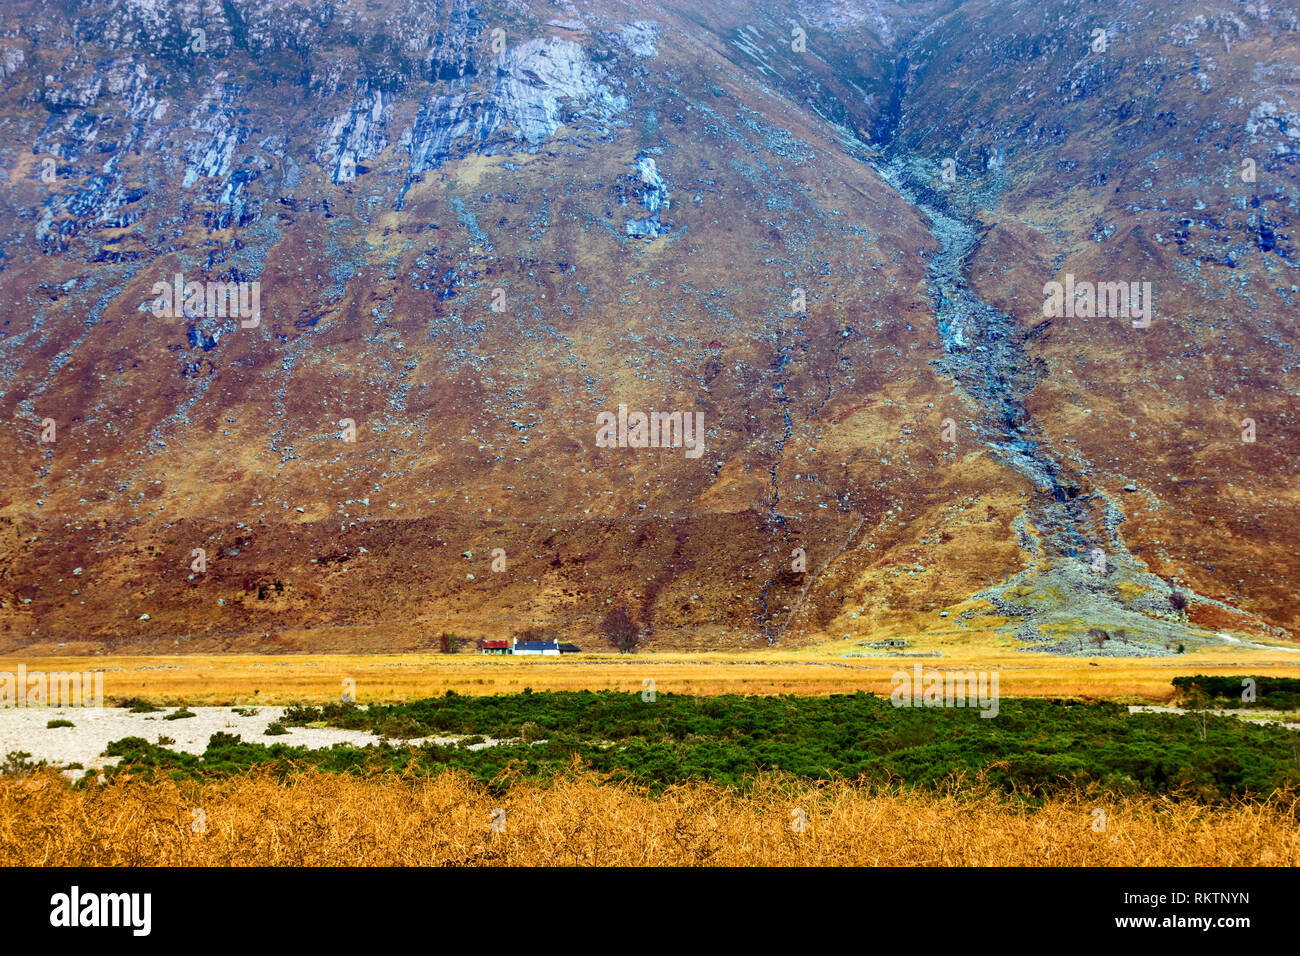 Ein Blick auf eine abgelegene Farm von einem hoch aufragenden Berg in den schottischen Highlands in den Schatten gestellt. Stockfoto